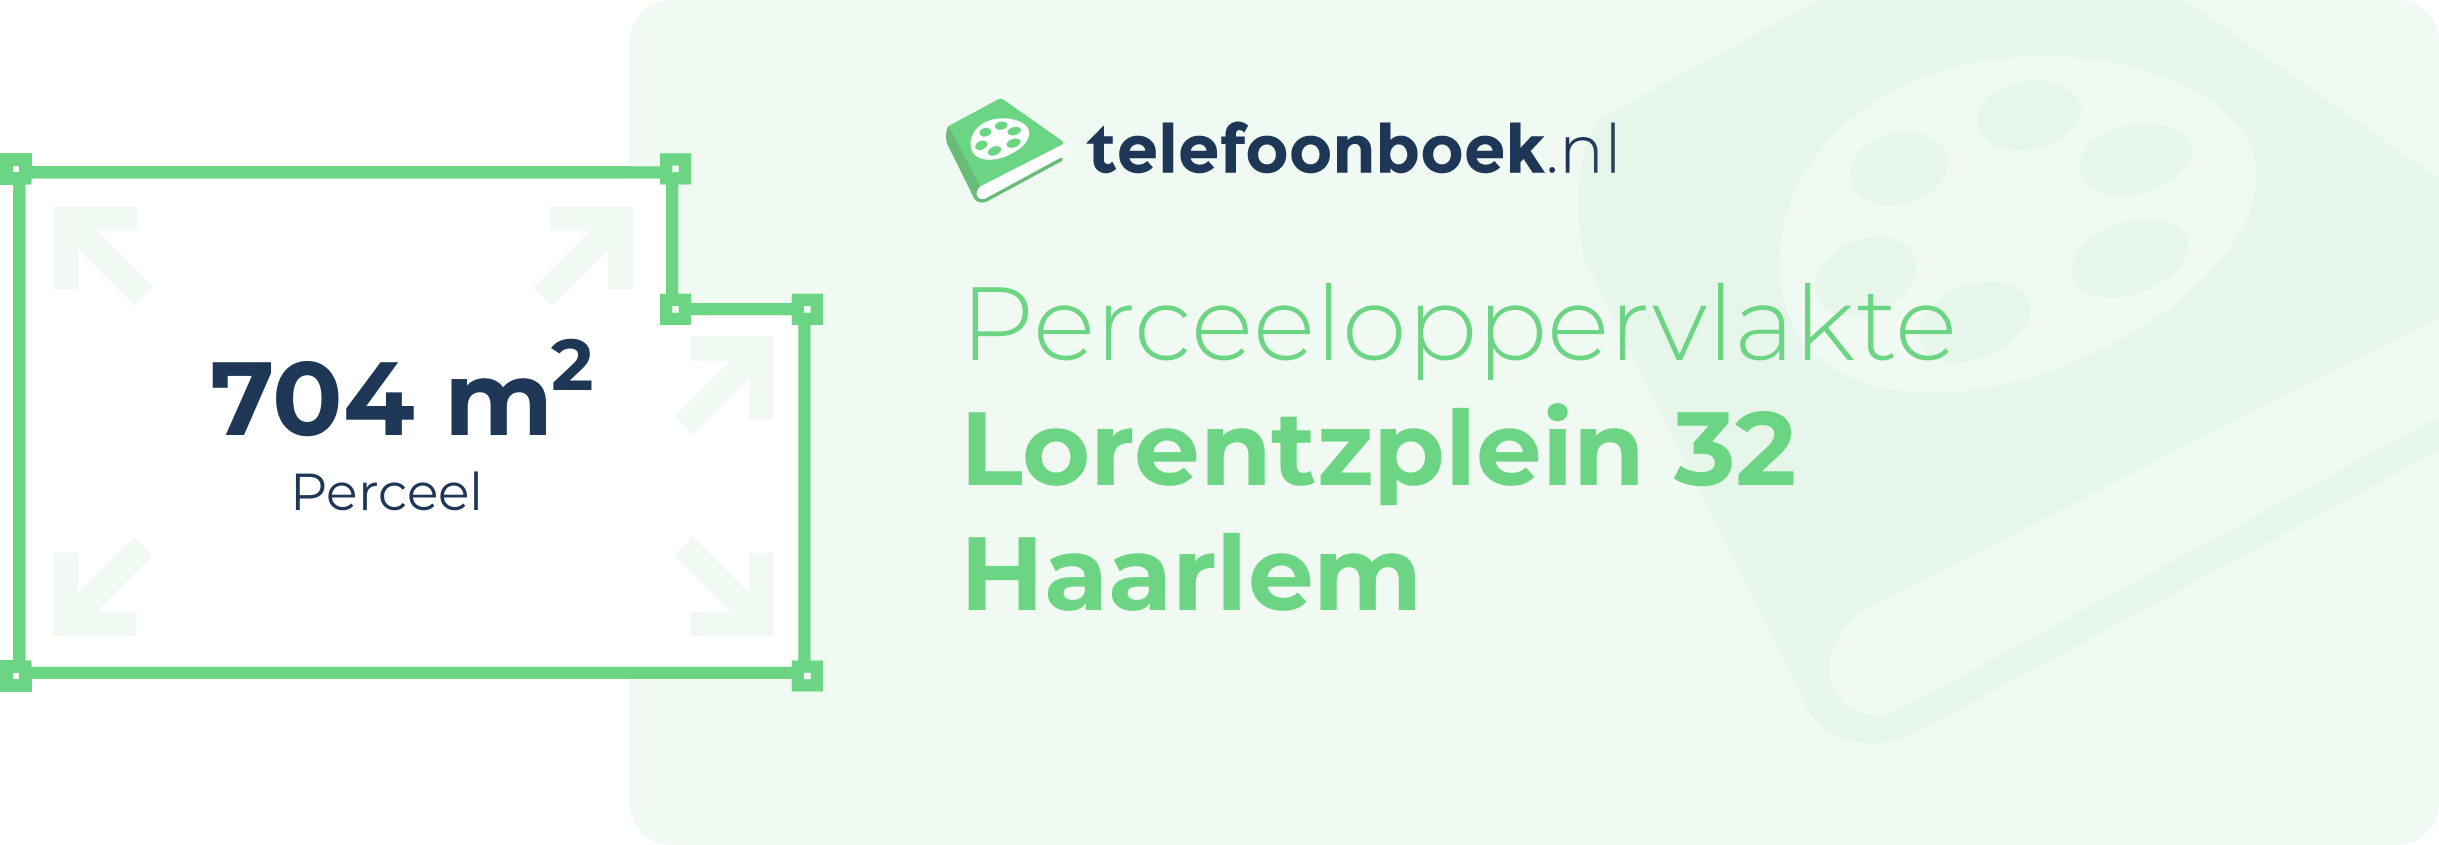 Perceeloppervlakte Lorentzplein 32 Haarlem